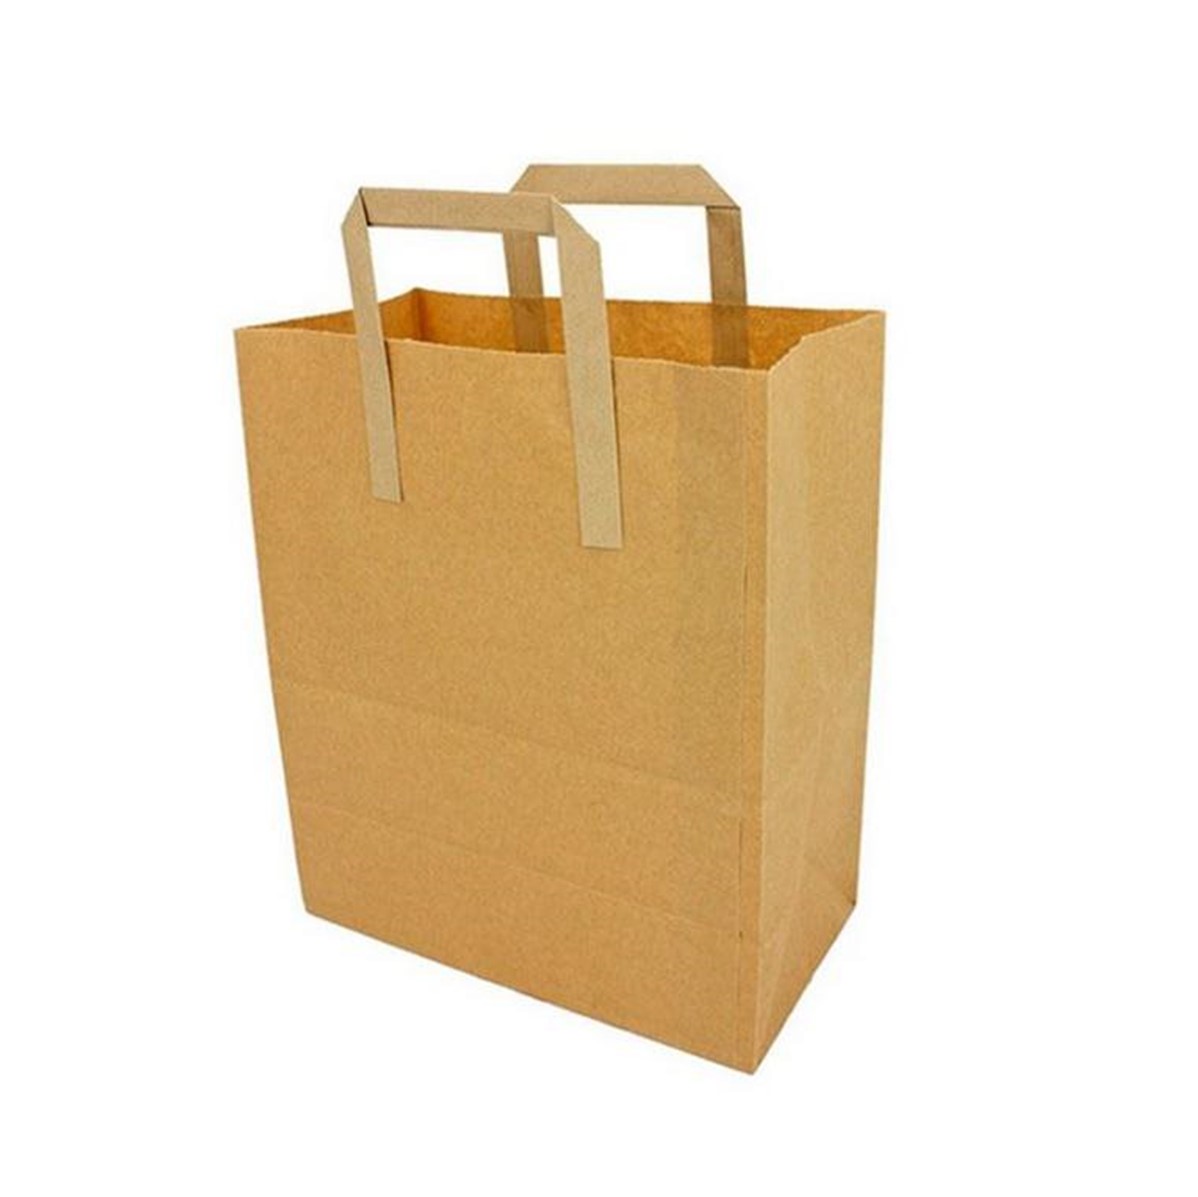 Take-Away Carrier Bag Brown MEDIUM - 125 bags [9x10''x4'']